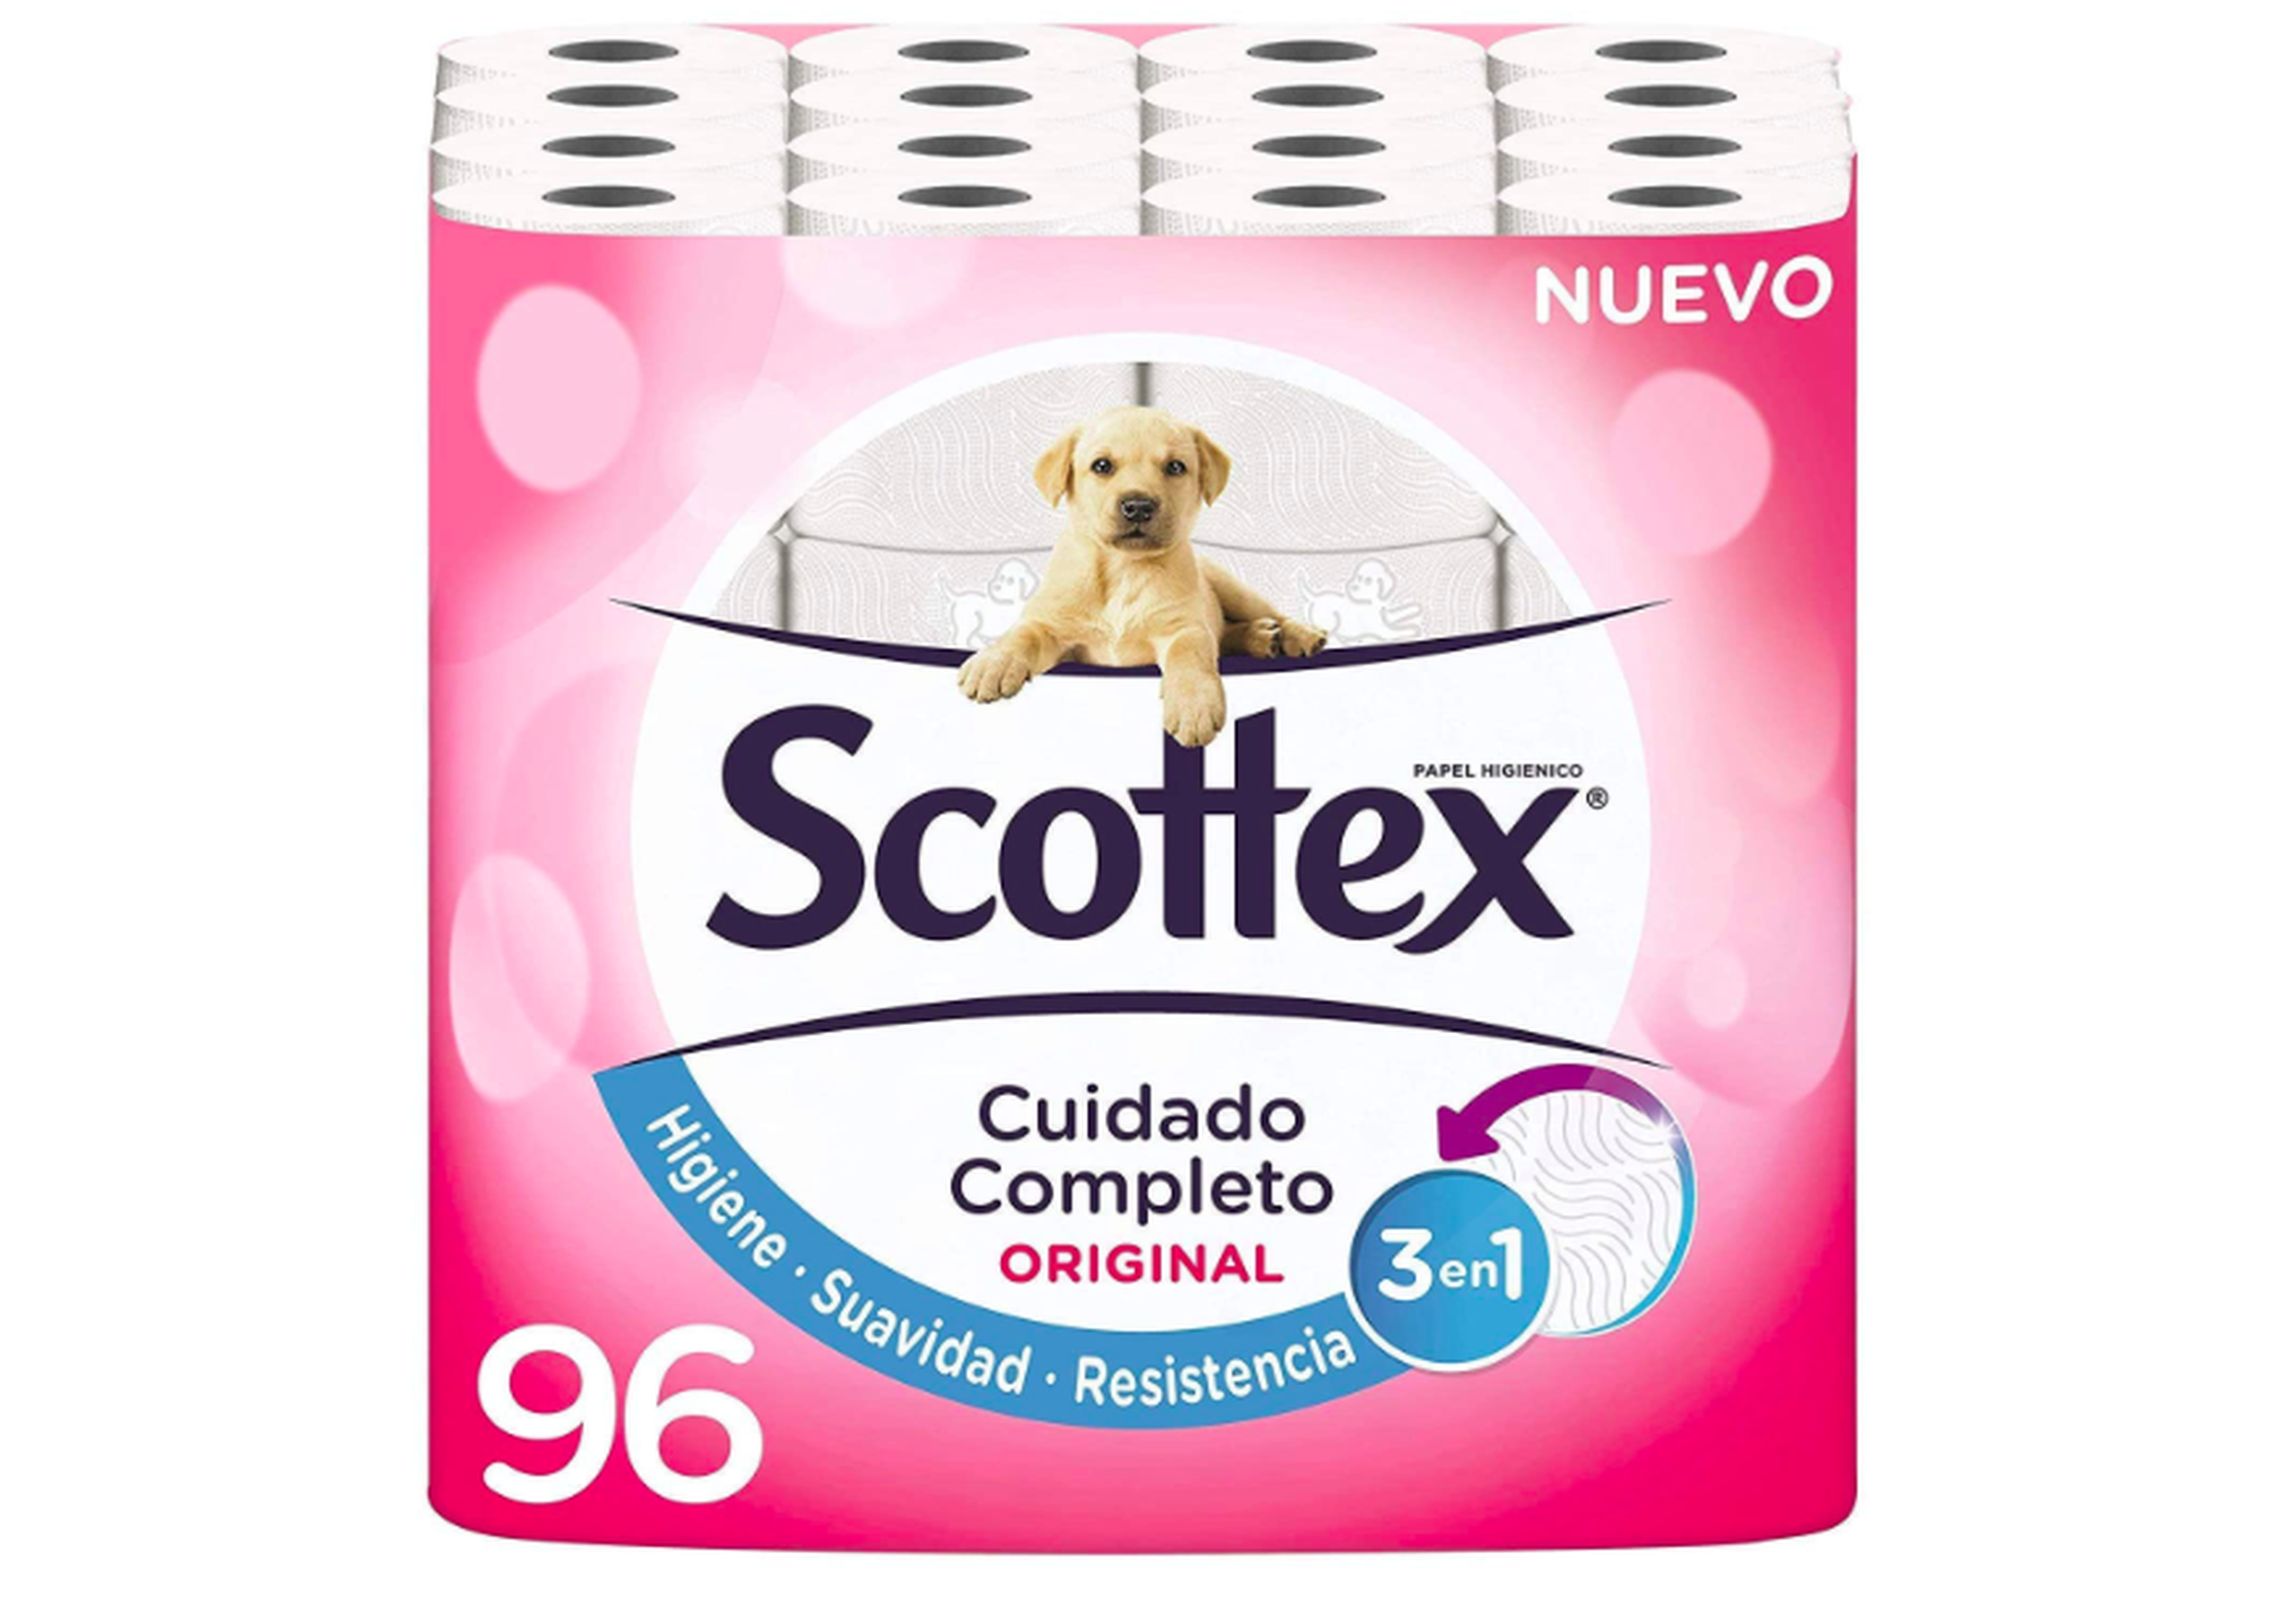 Papel higiénico Scottex de venta en Amazon.